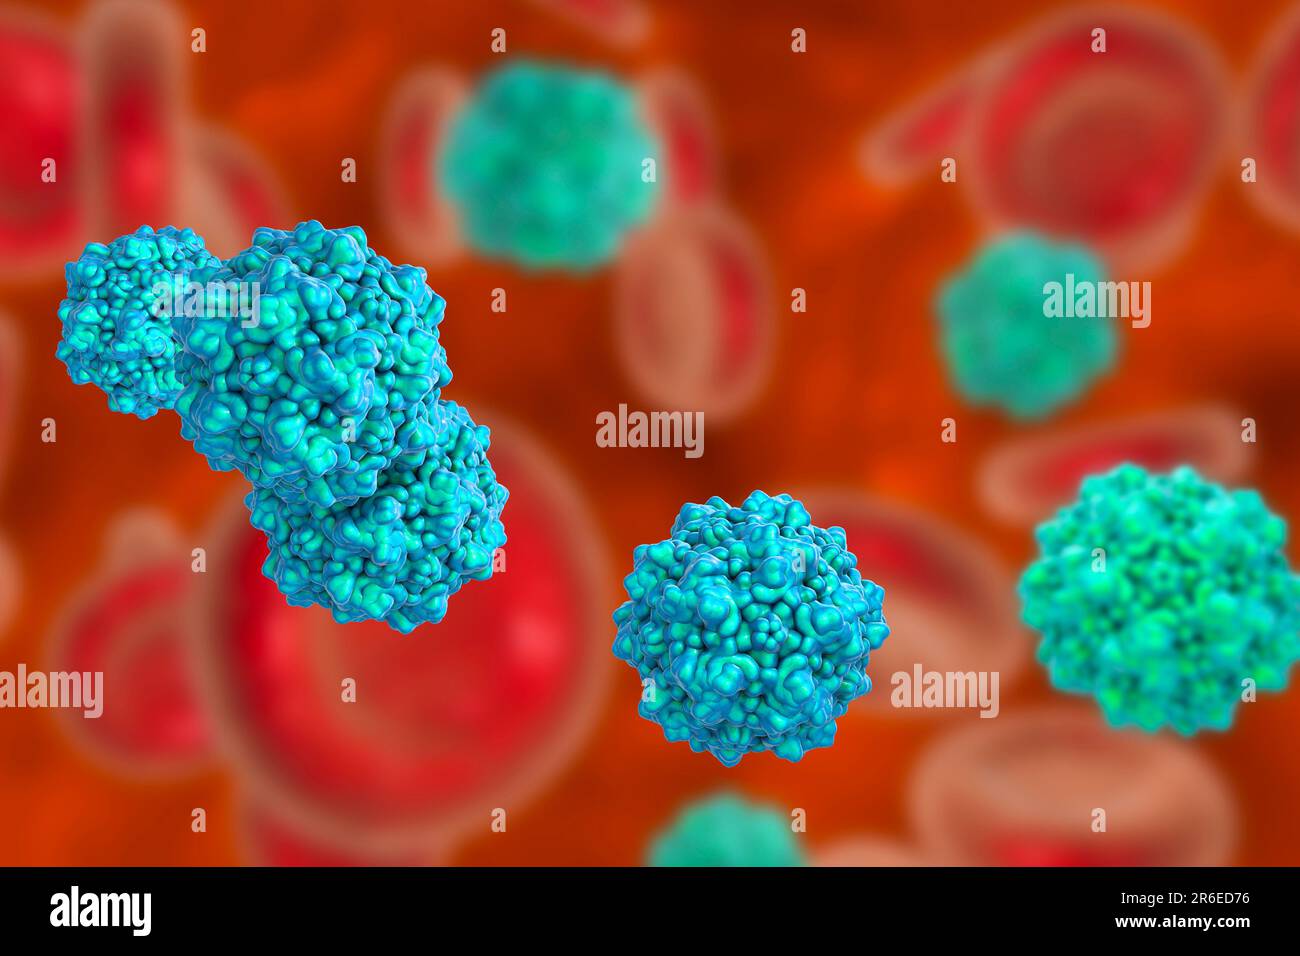 Parvovirus-Partikel, Computerdarstellung. Molekulares Modell zur Darstellung der Struktur des Kapsids (äußere Proteinhülle) eines humanen Parvovirus (Familie Pa Stockfoto